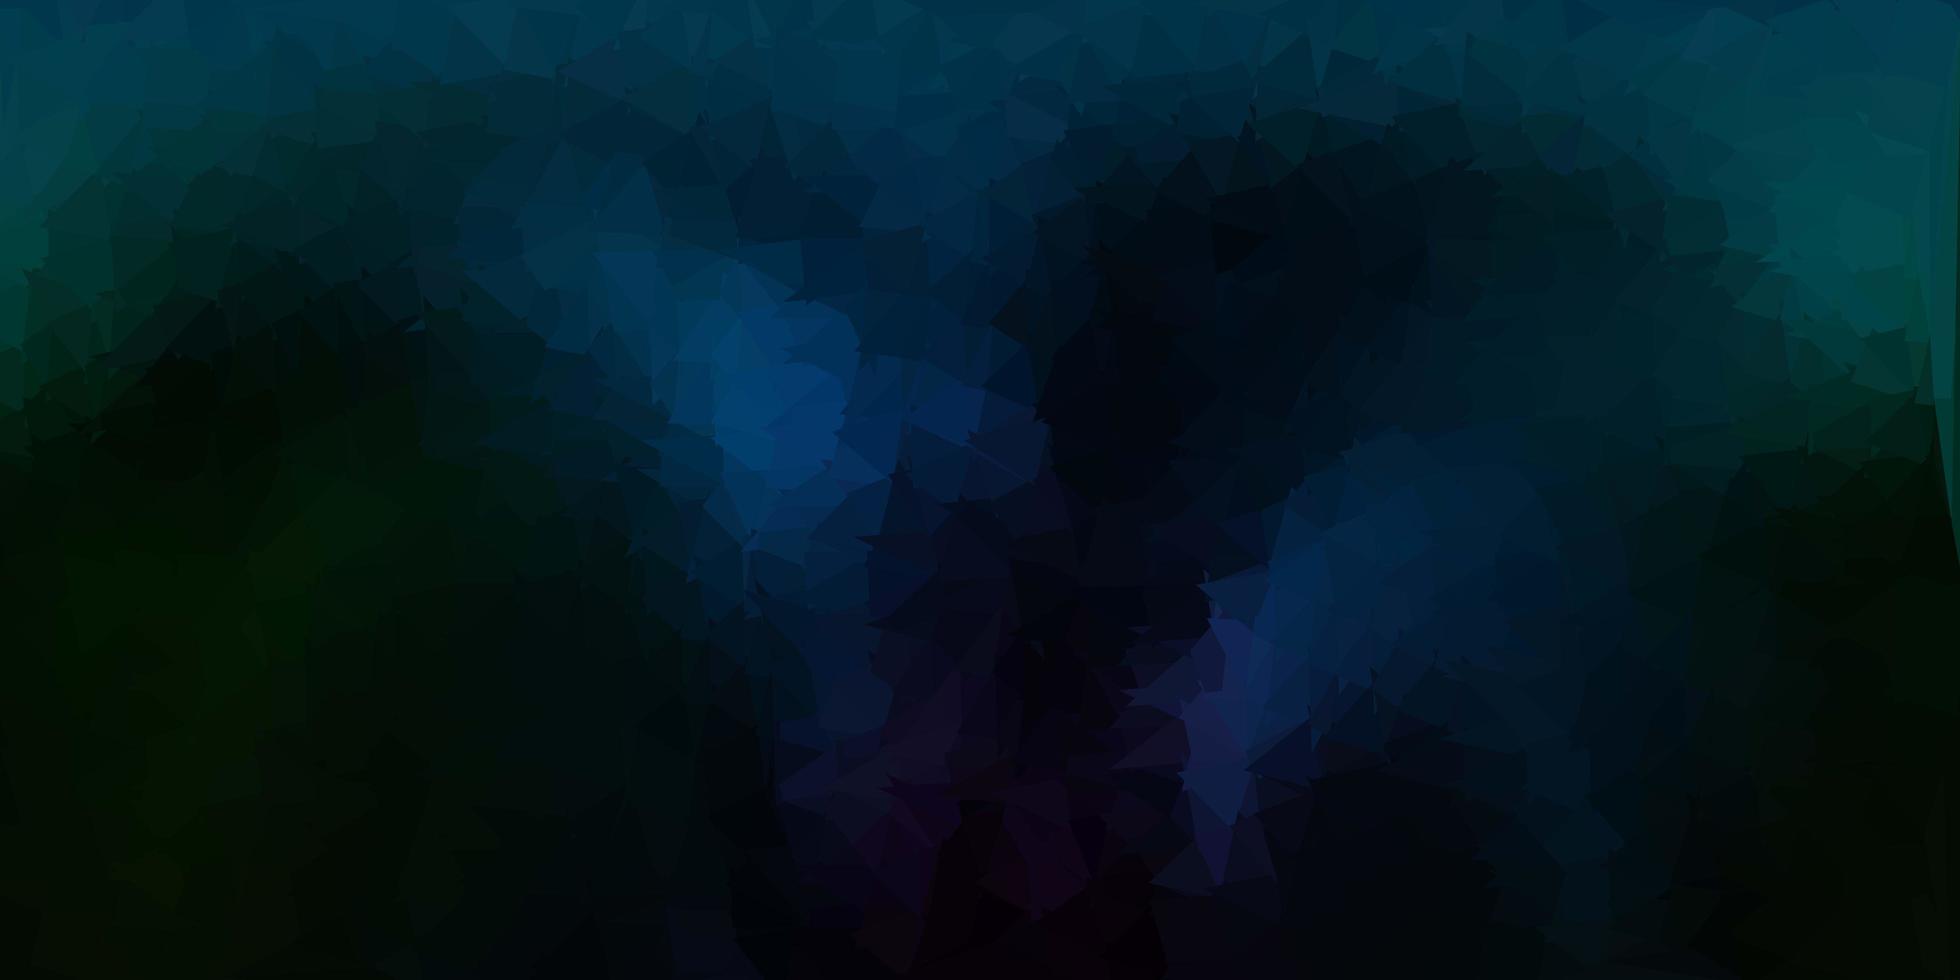 mörkblå, grön vektor abstrakt triangel bakgrund.